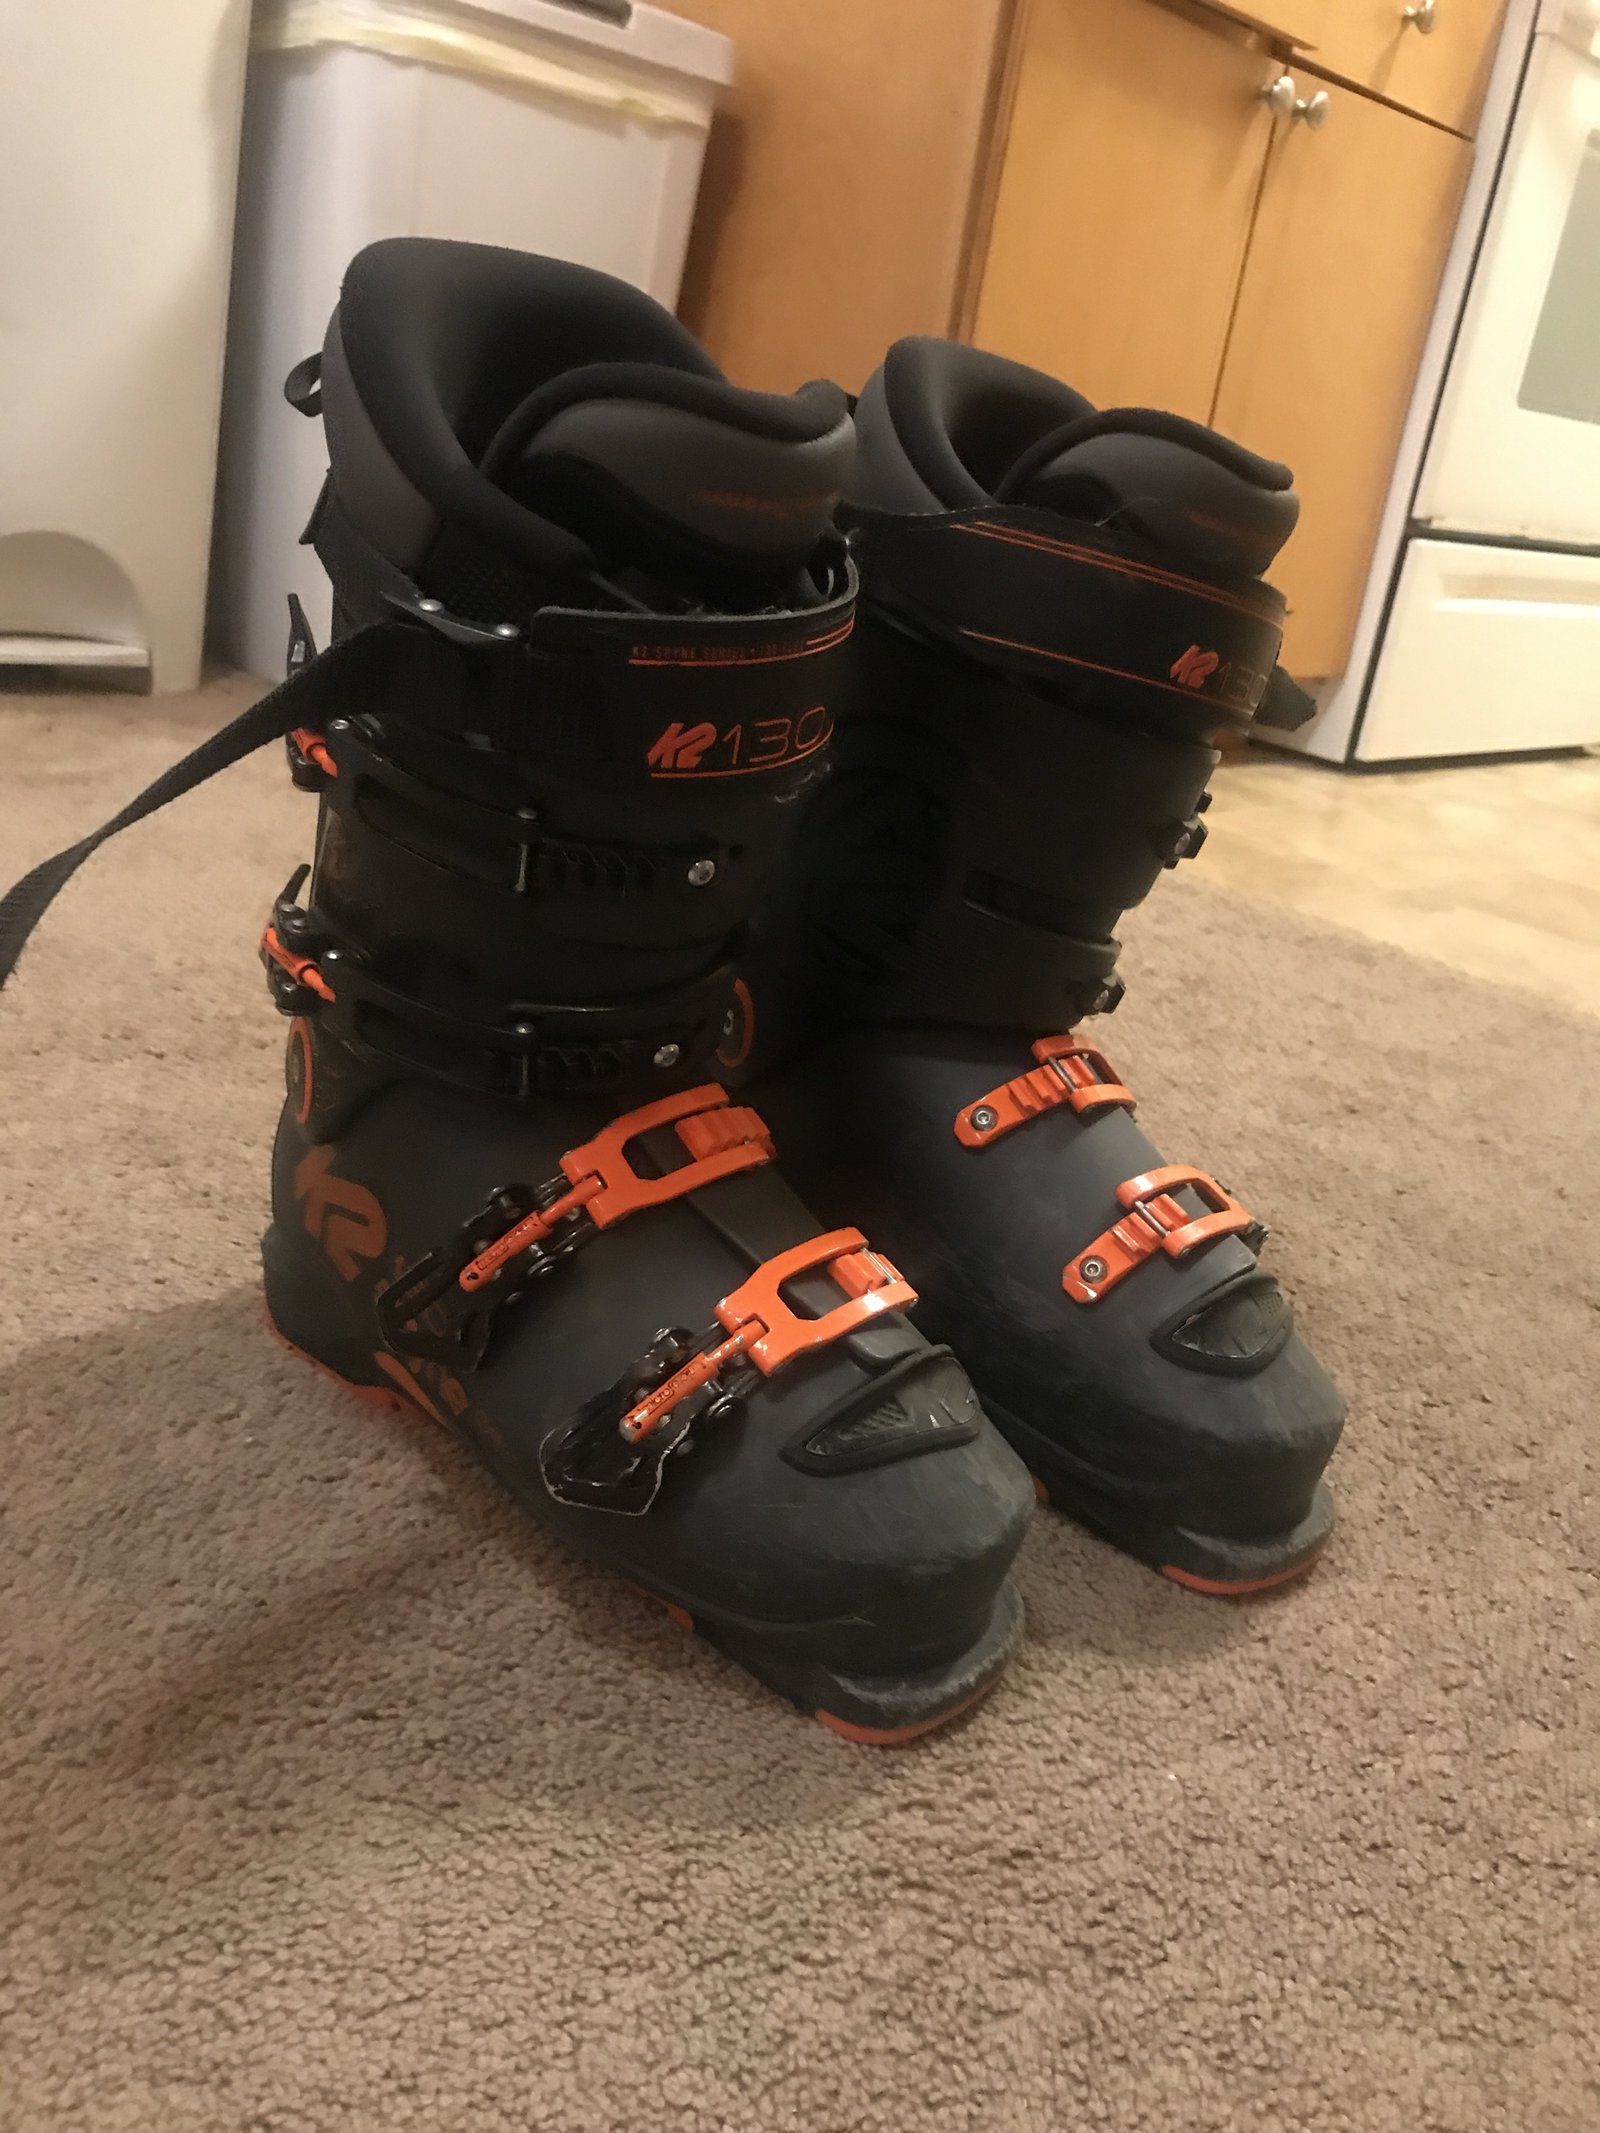 K2 Spyne boots